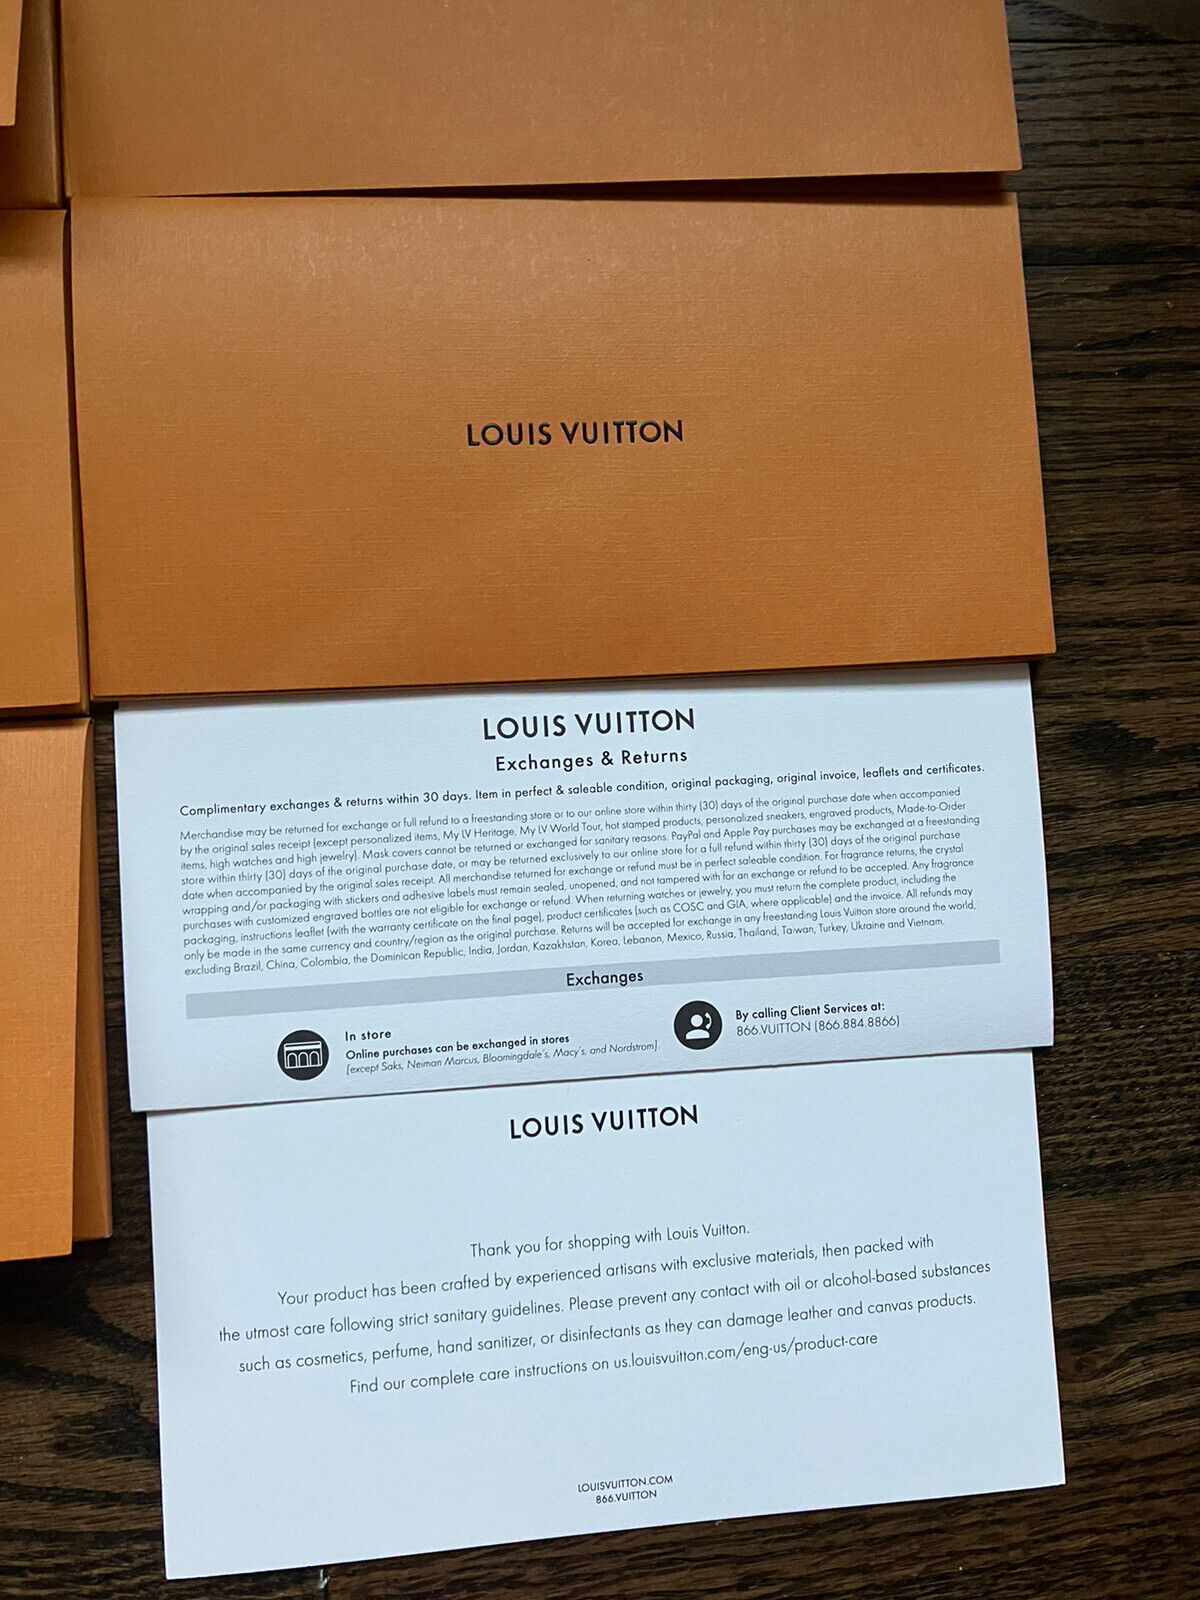 LOUIS VUITTON Orange Gift Bag/Tote & Gift Receipt Envelope.  9.75”x8”x5.75”. NEW.